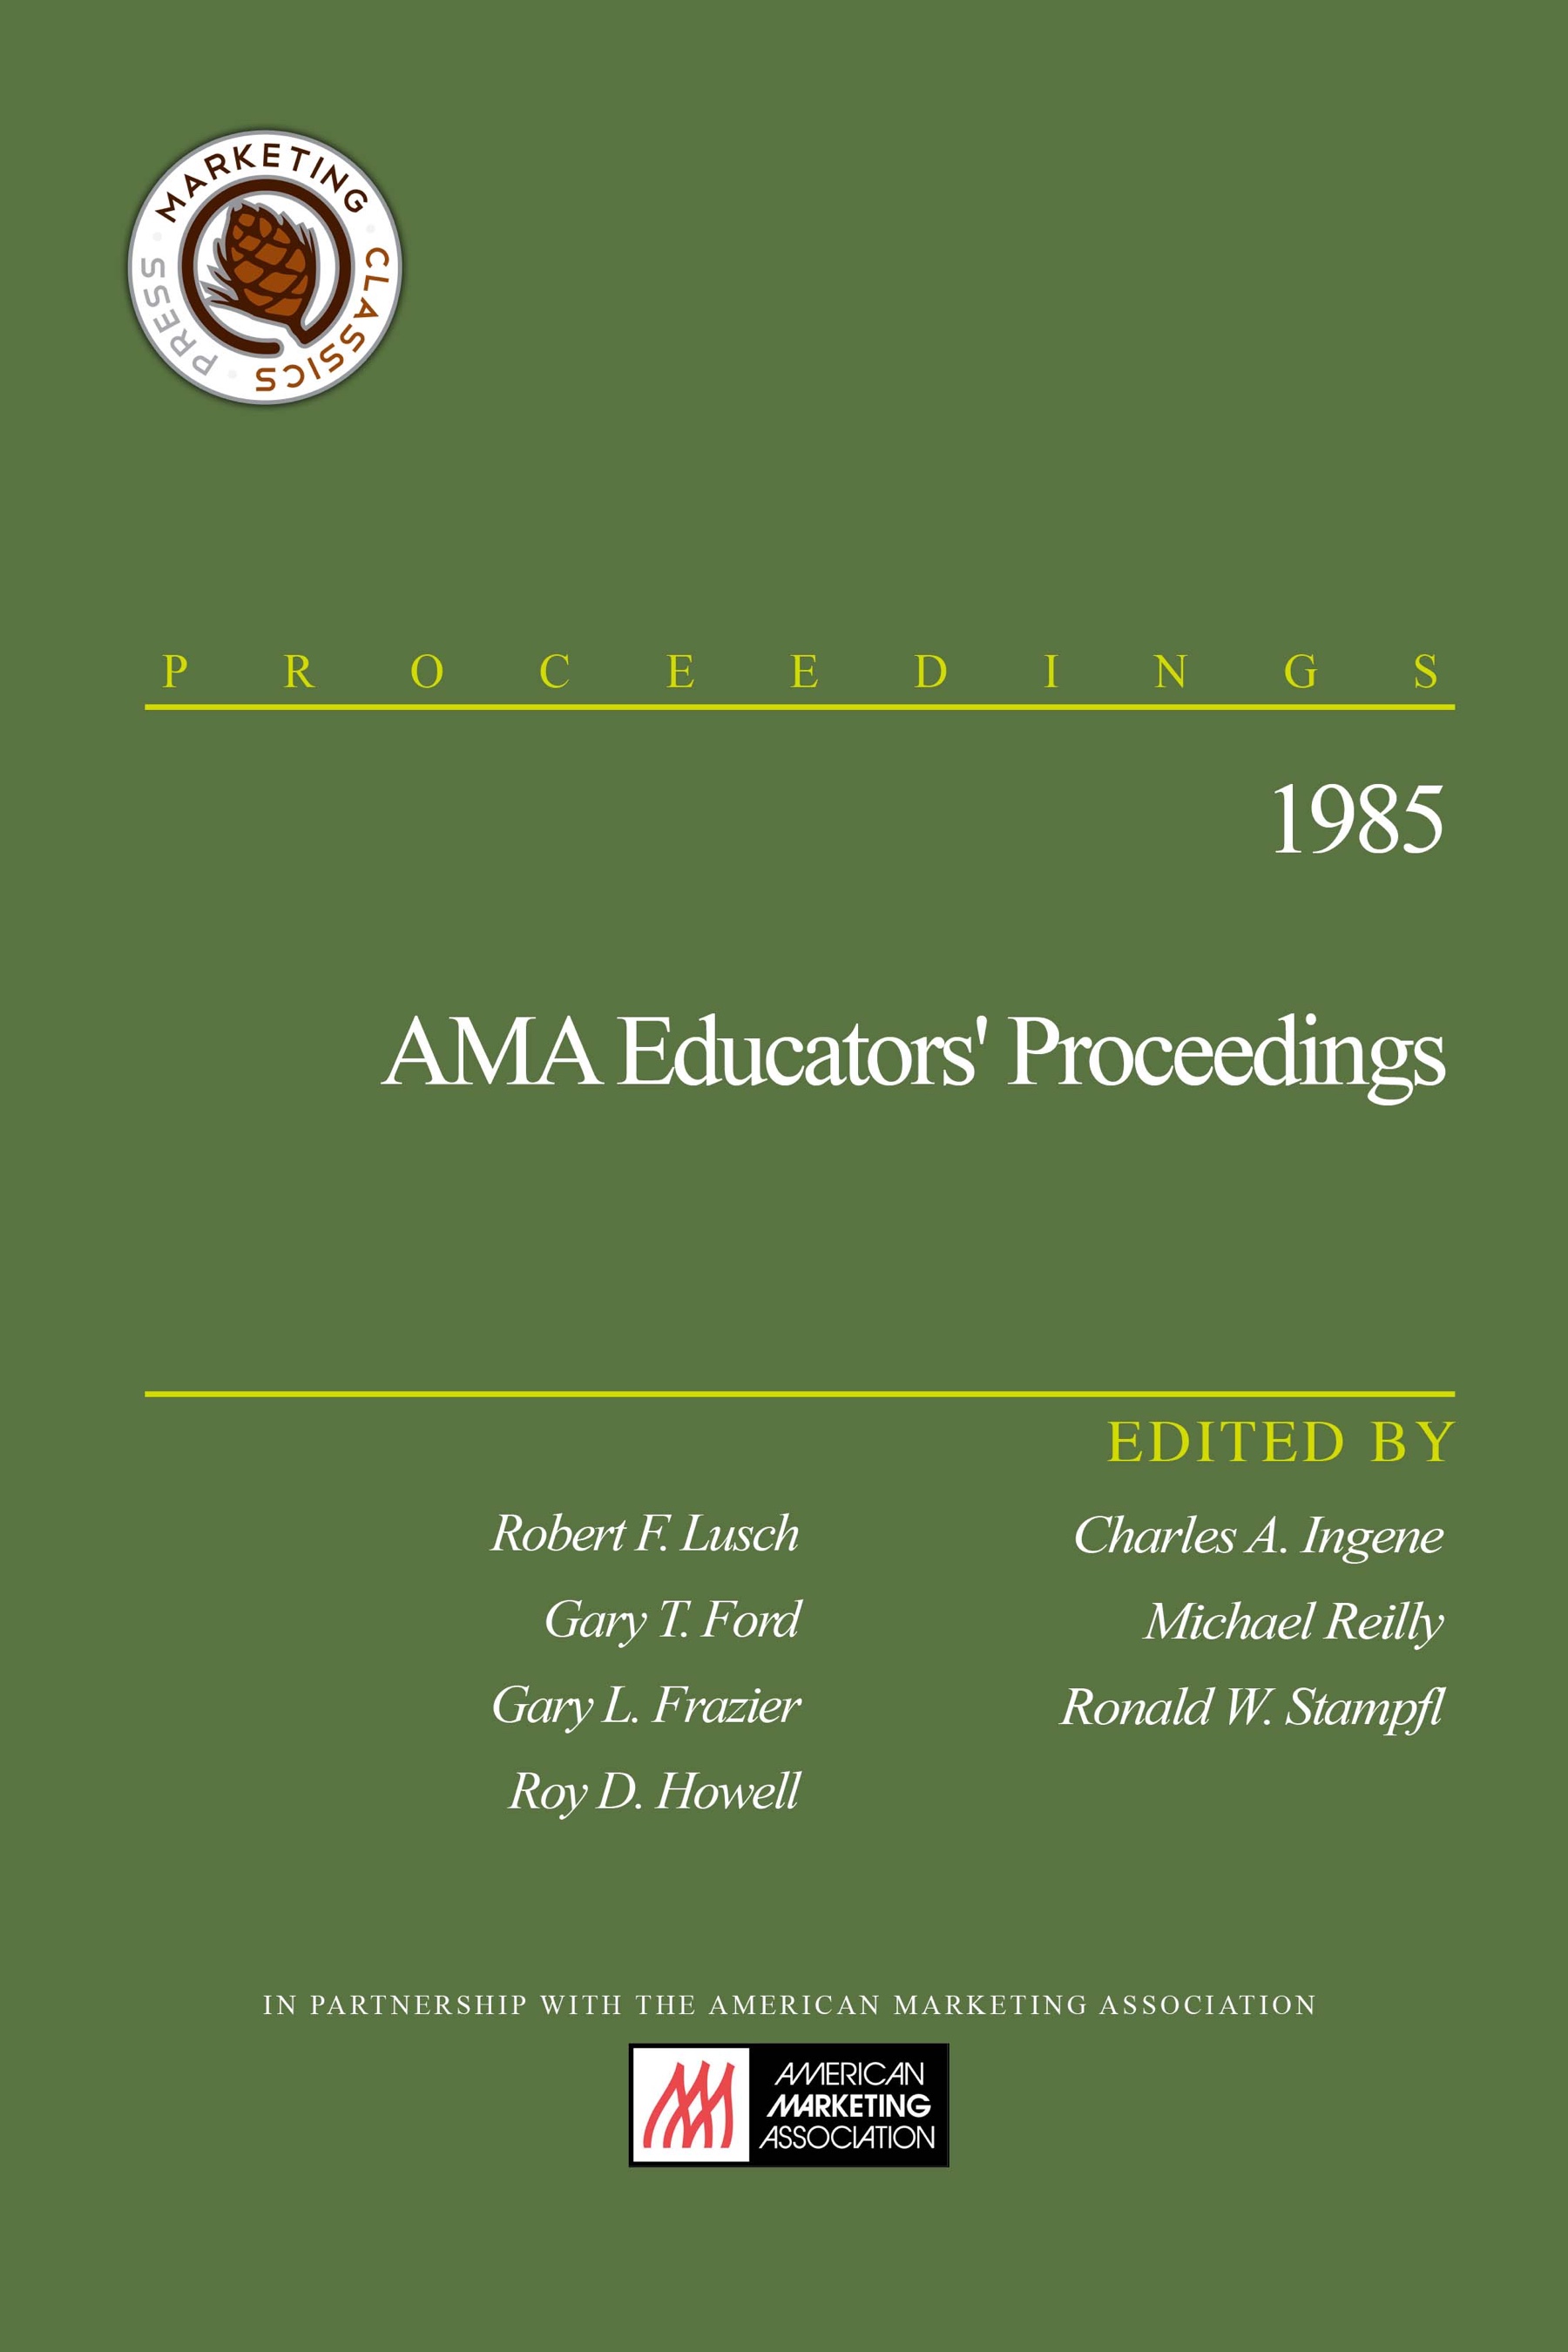 1985 AMA Educators’ Proceedings